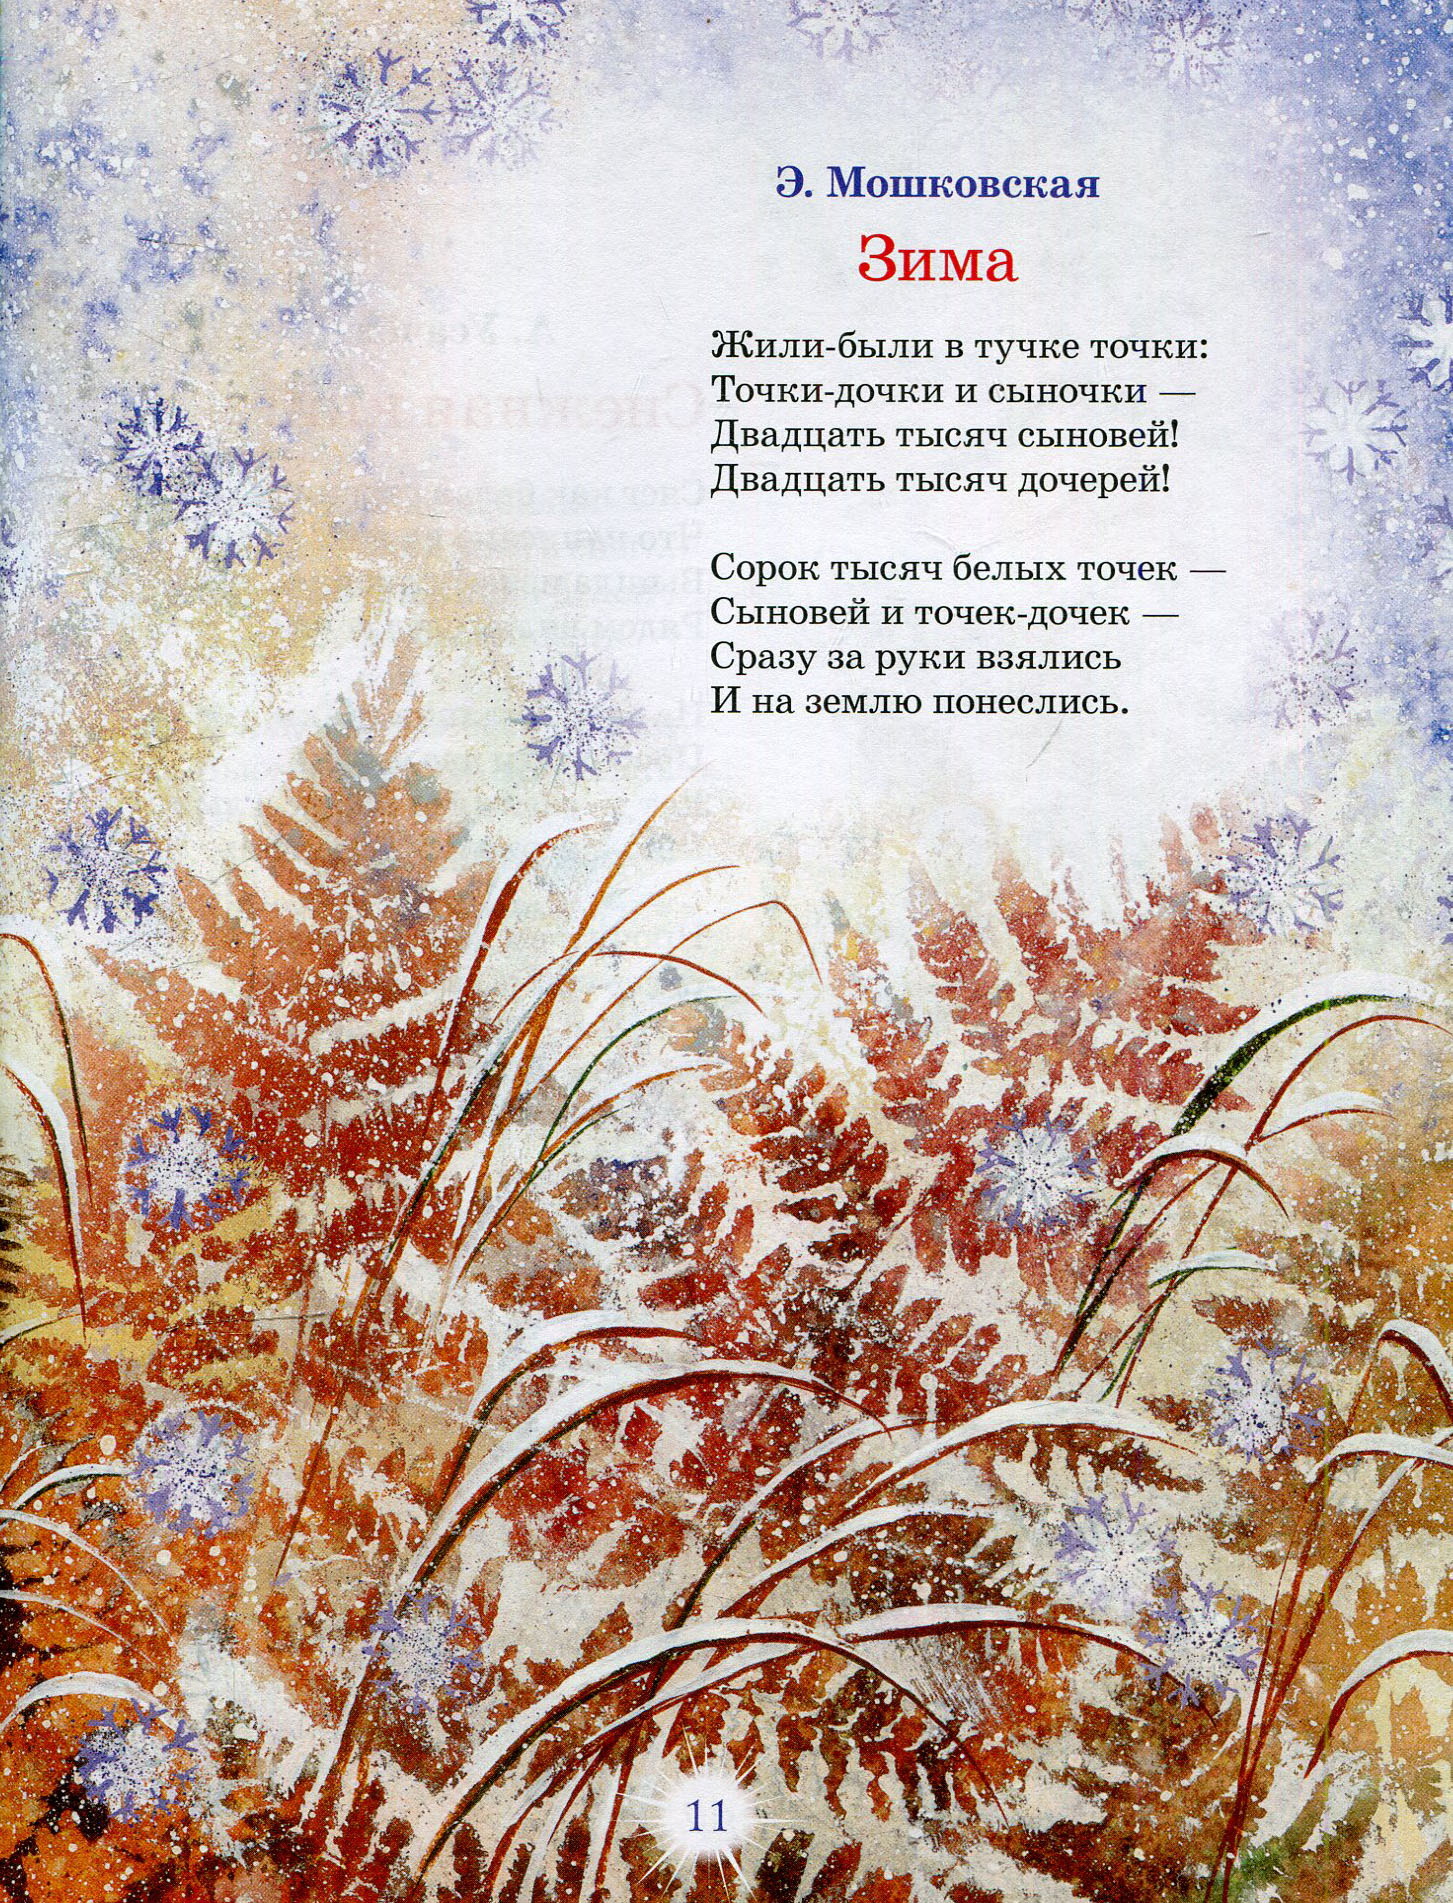 Стихи про осень русских поэтов-классиков